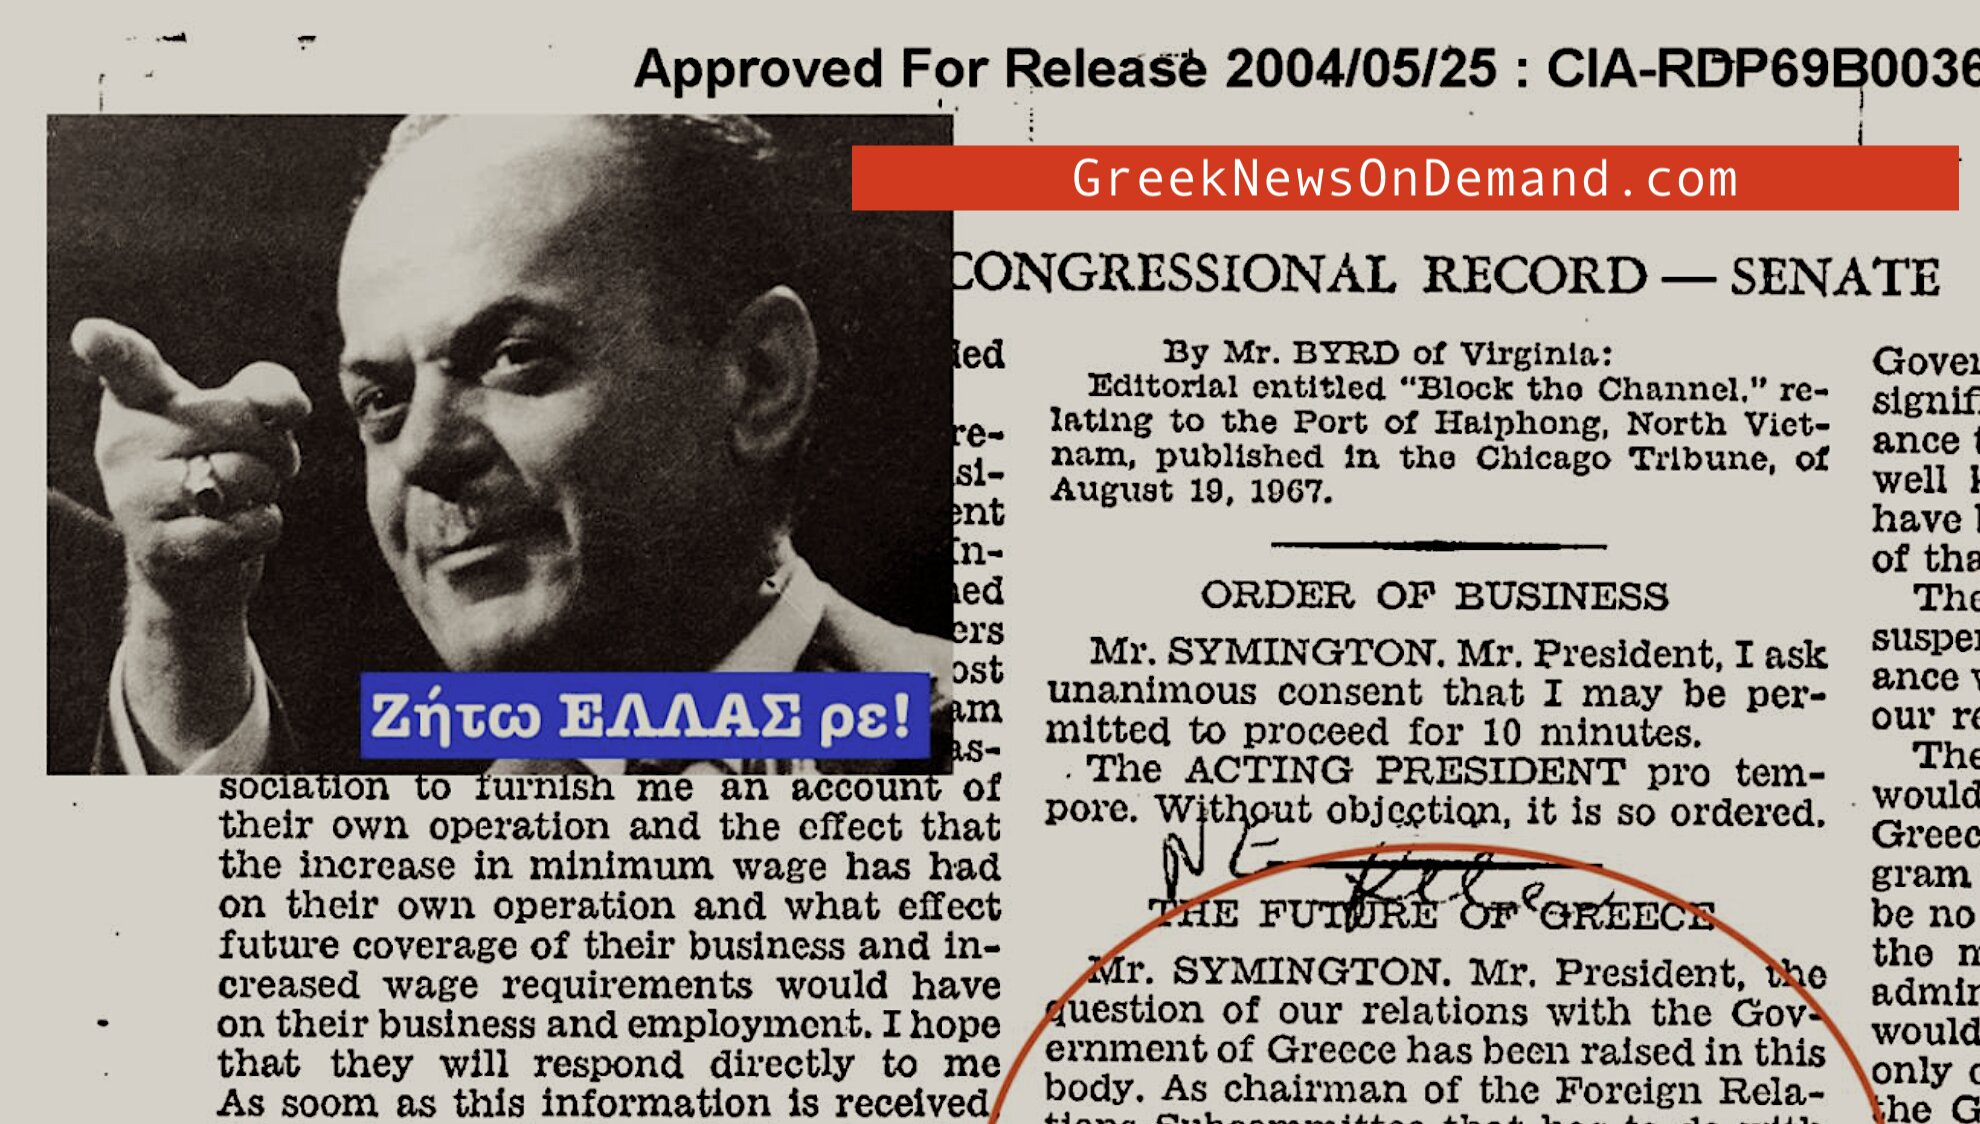 Τα αρχεία του Κογκρέσου των Ηνωμένων Πολιτειών είχαν επιβεβαιώσει στις 21 Αυγ. 1967 ότι η αμερικανική κυβέρνηση ΔΕΝ έβαλε στην εξουσία την ελληνική χούντα!!!